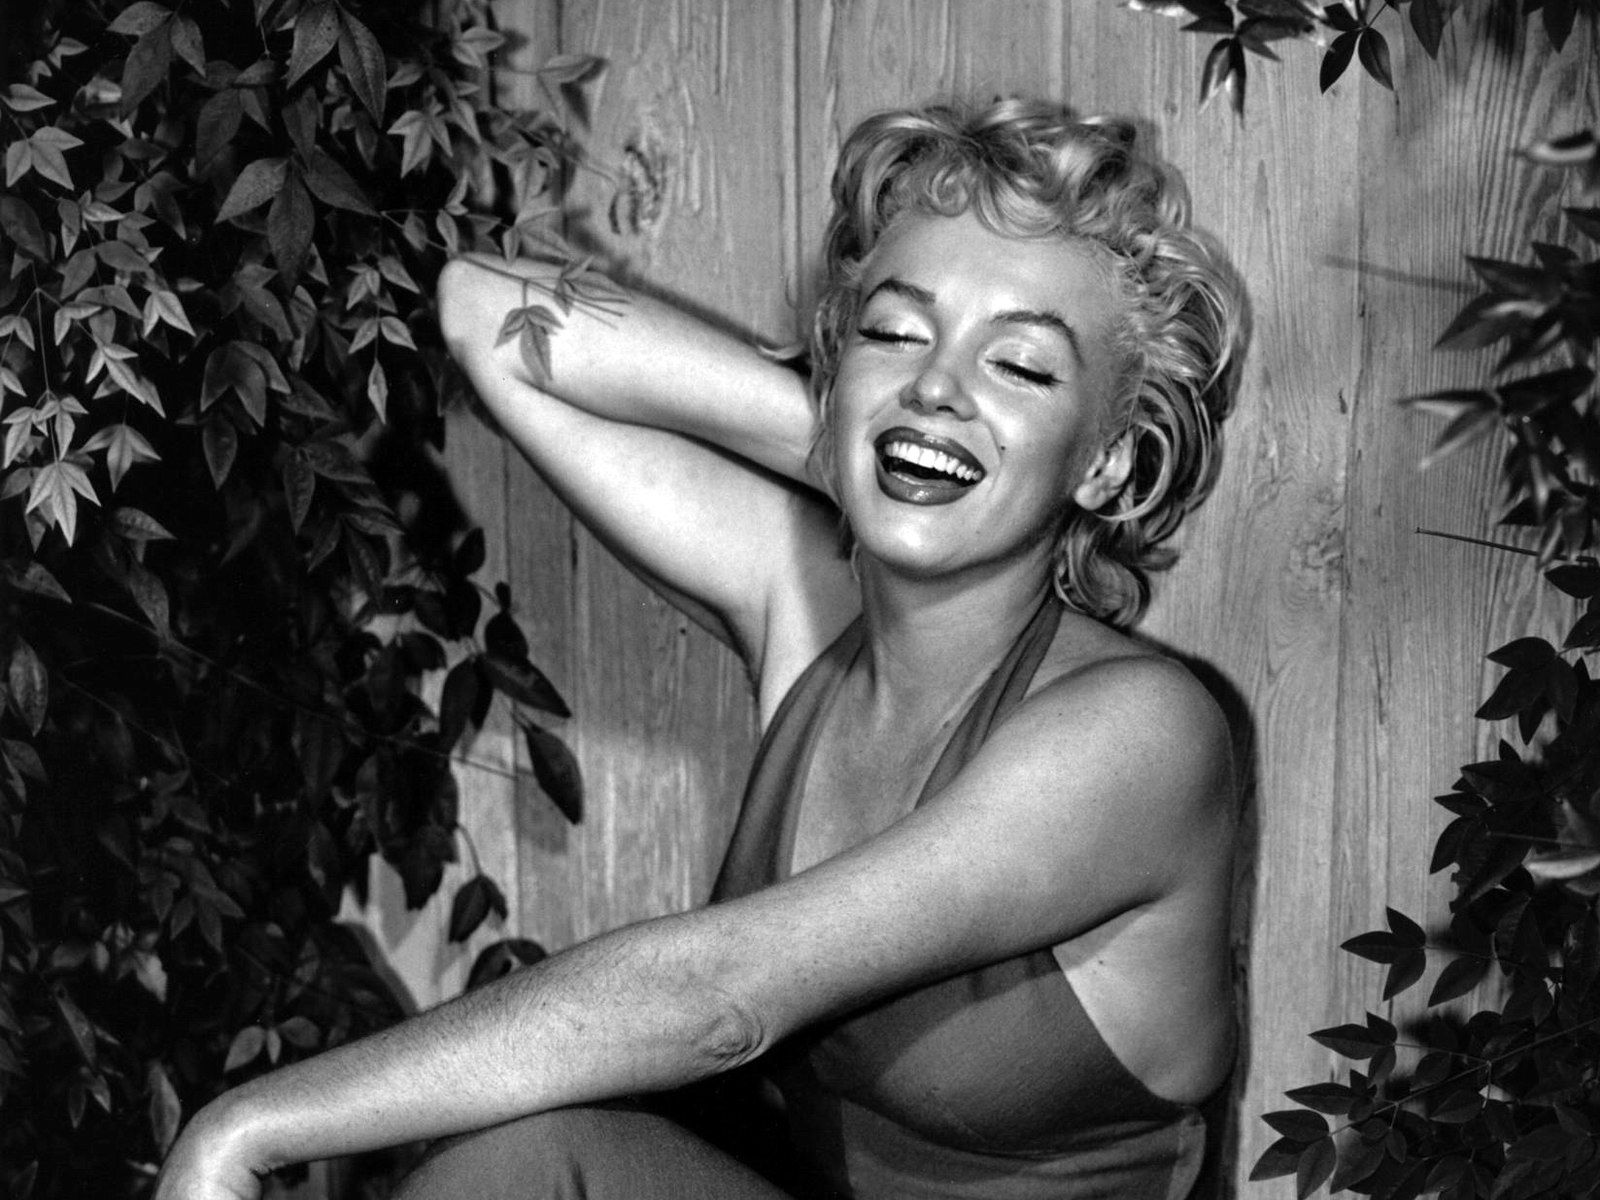 HD wallpaper, Monroe, Marilyn, Wallpaper